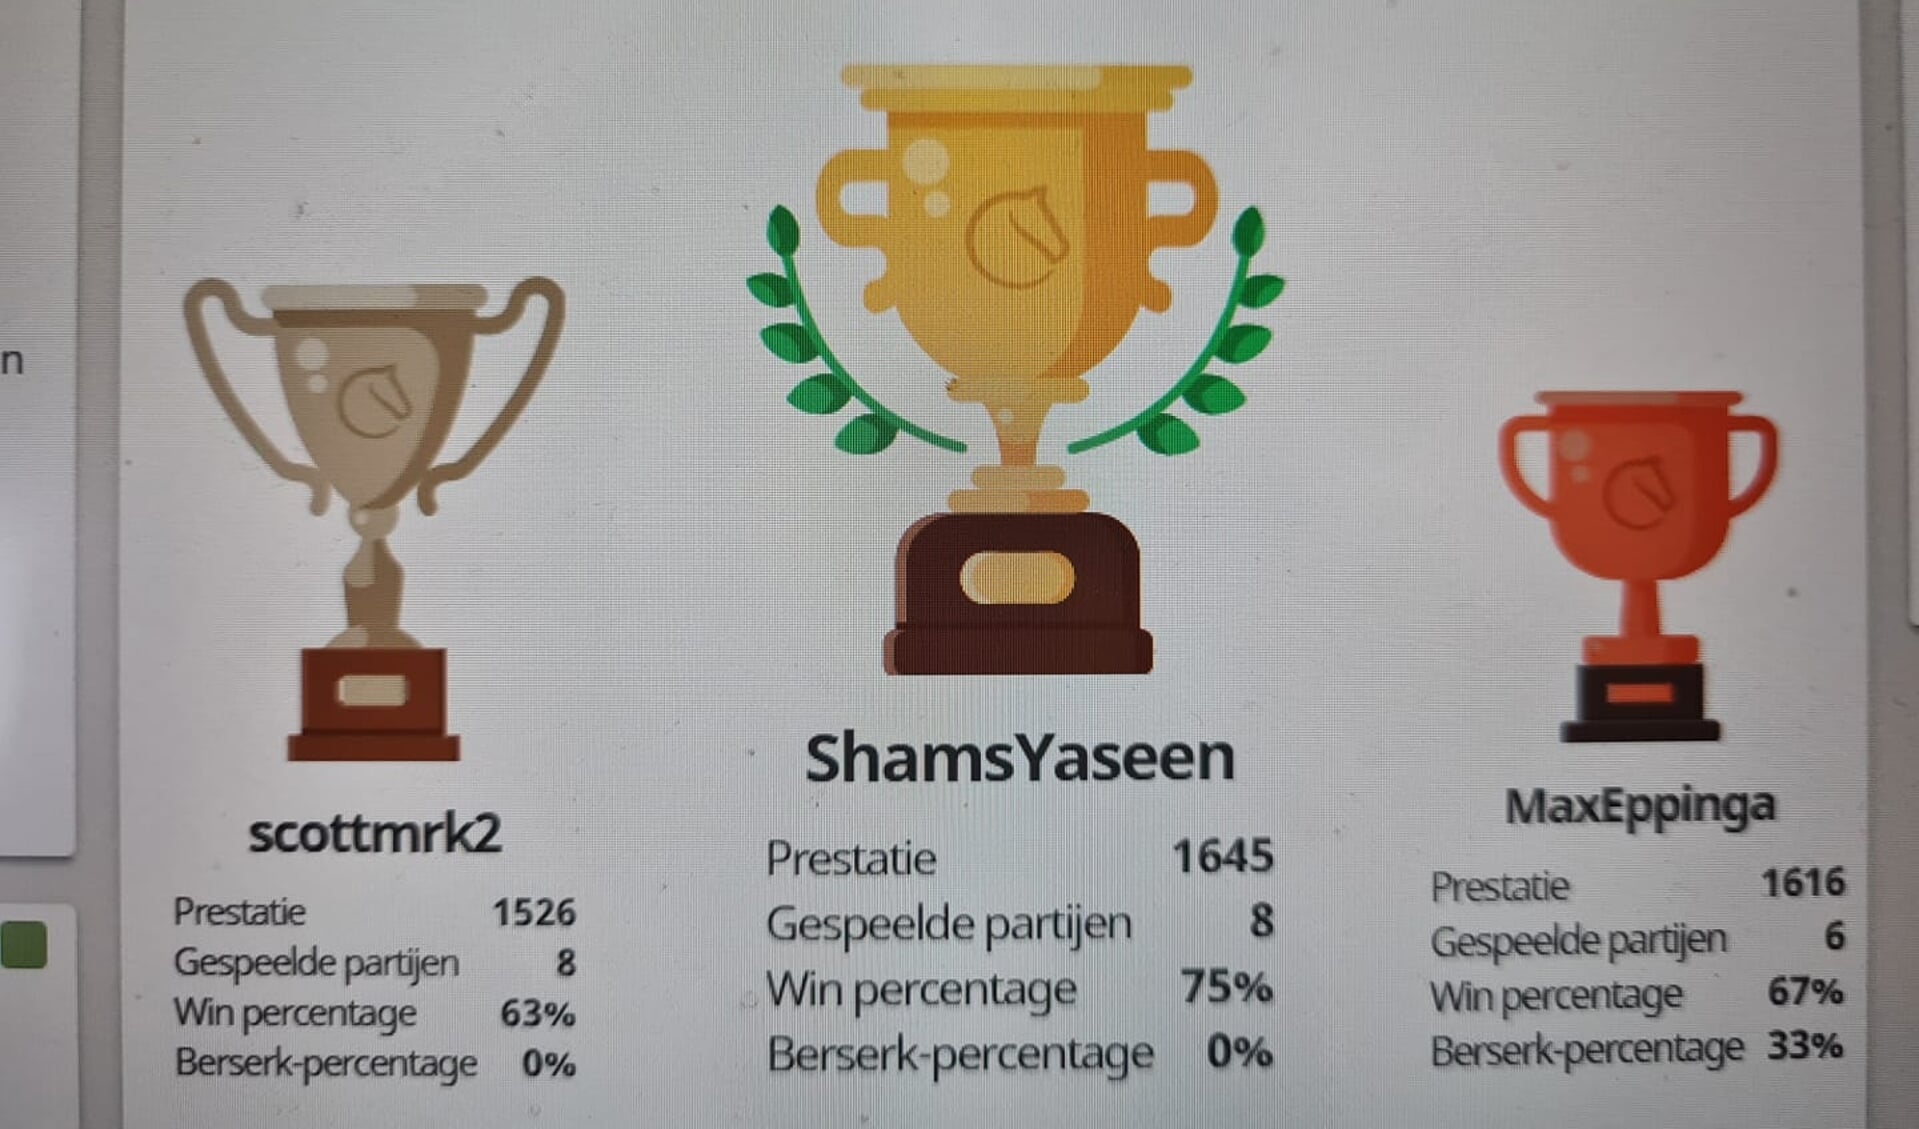 Schams Yaseen voor tweede keer jeugdclubkampioen in Meerkerk